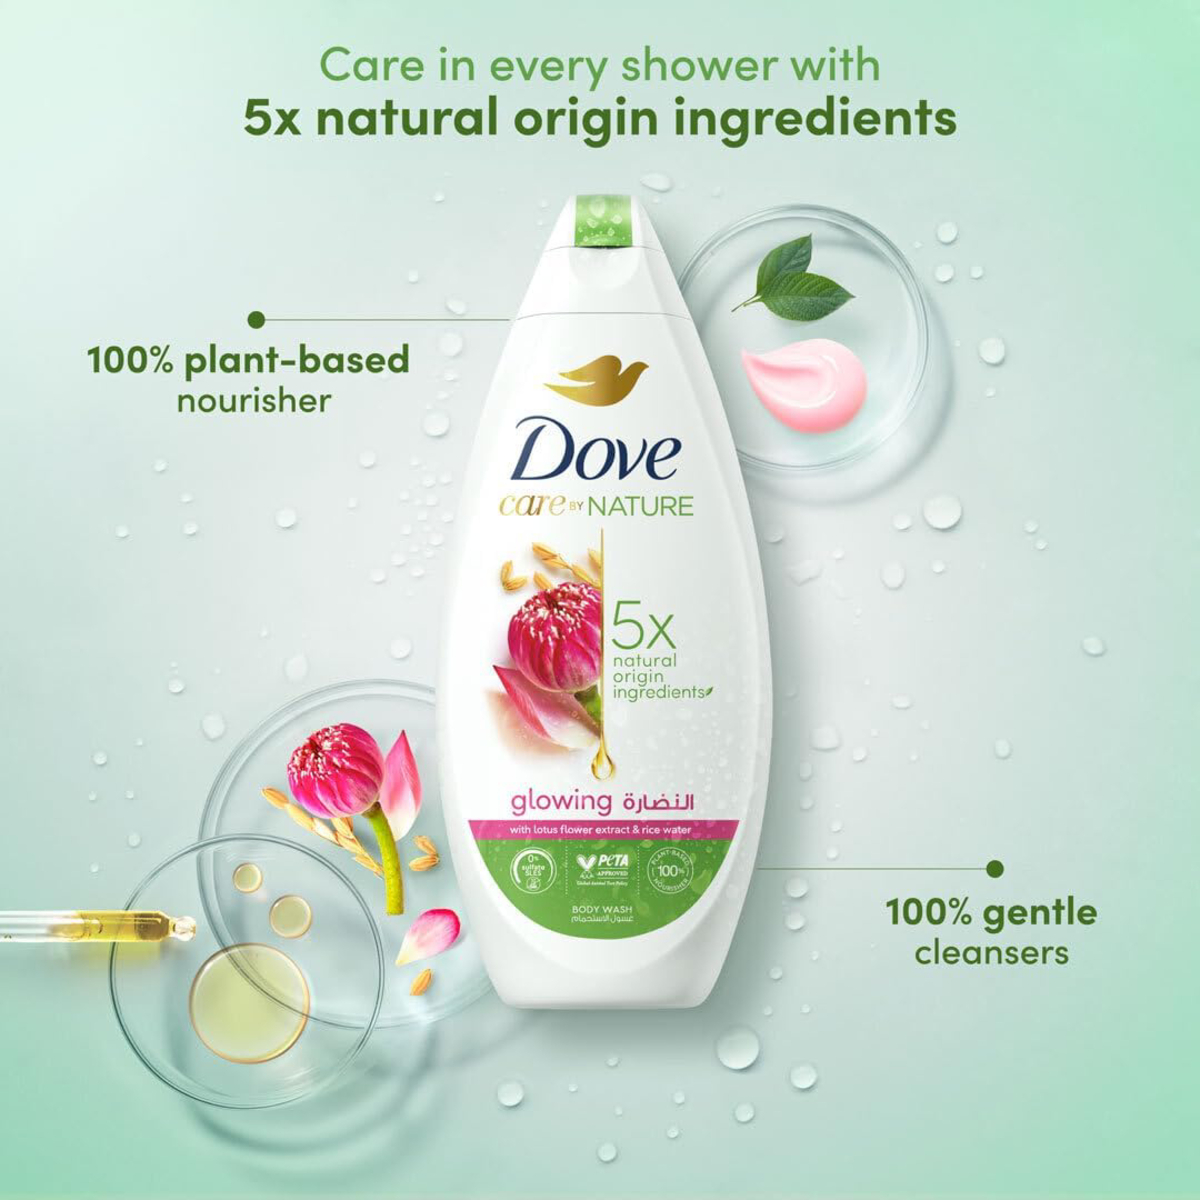 Dove Glowing Ritual Body Wash 500 ml